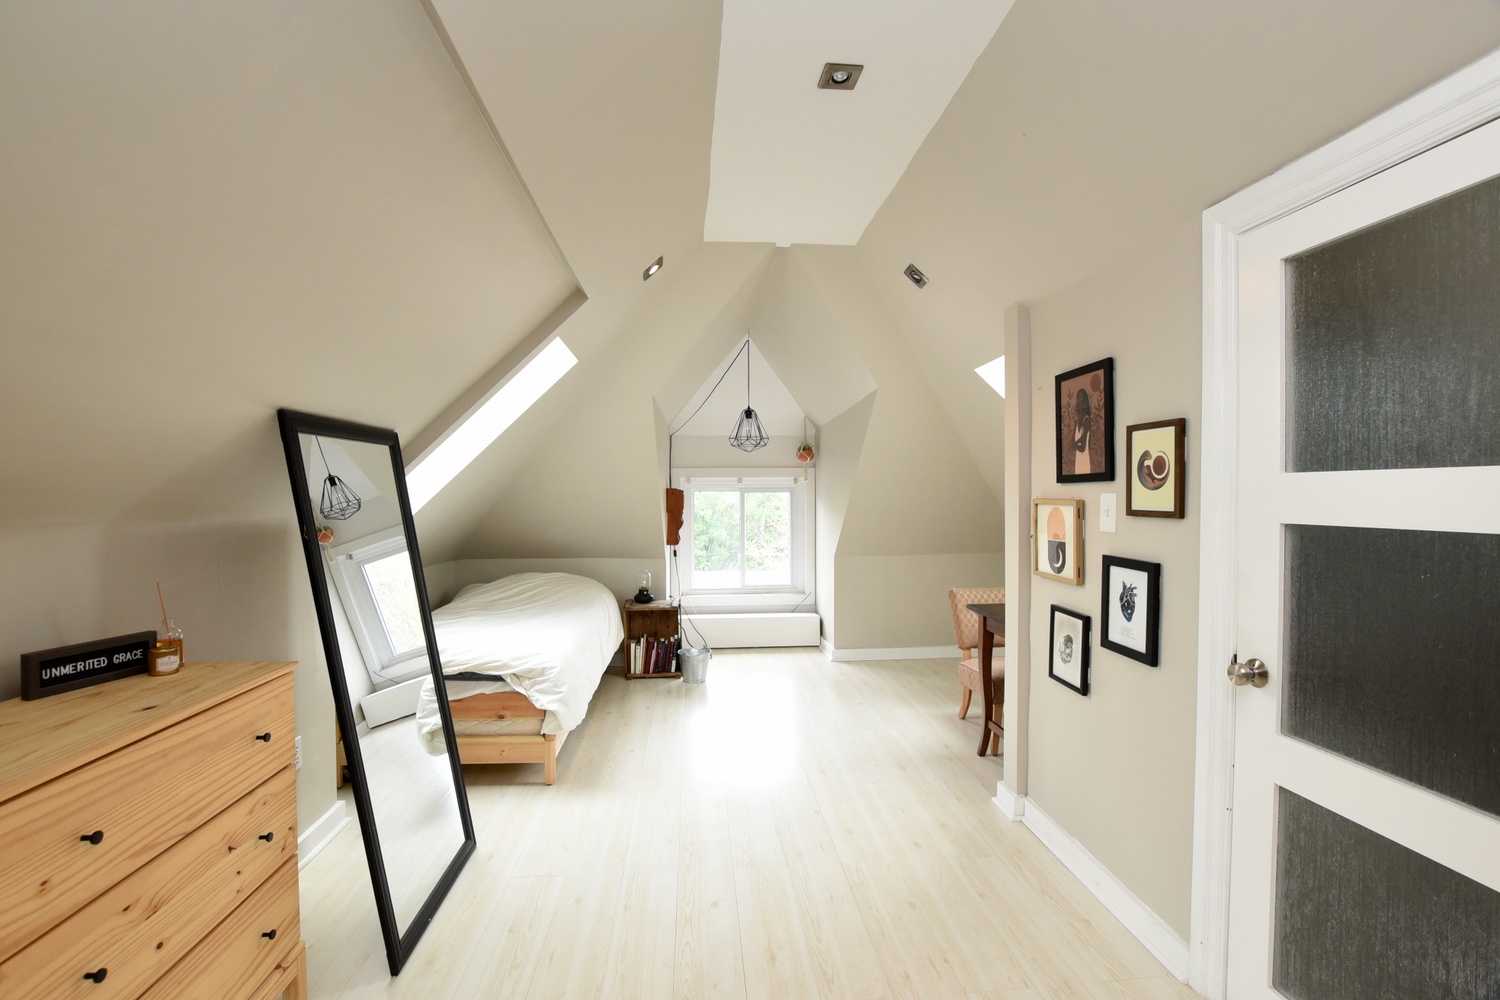 A - Bedroom Loft